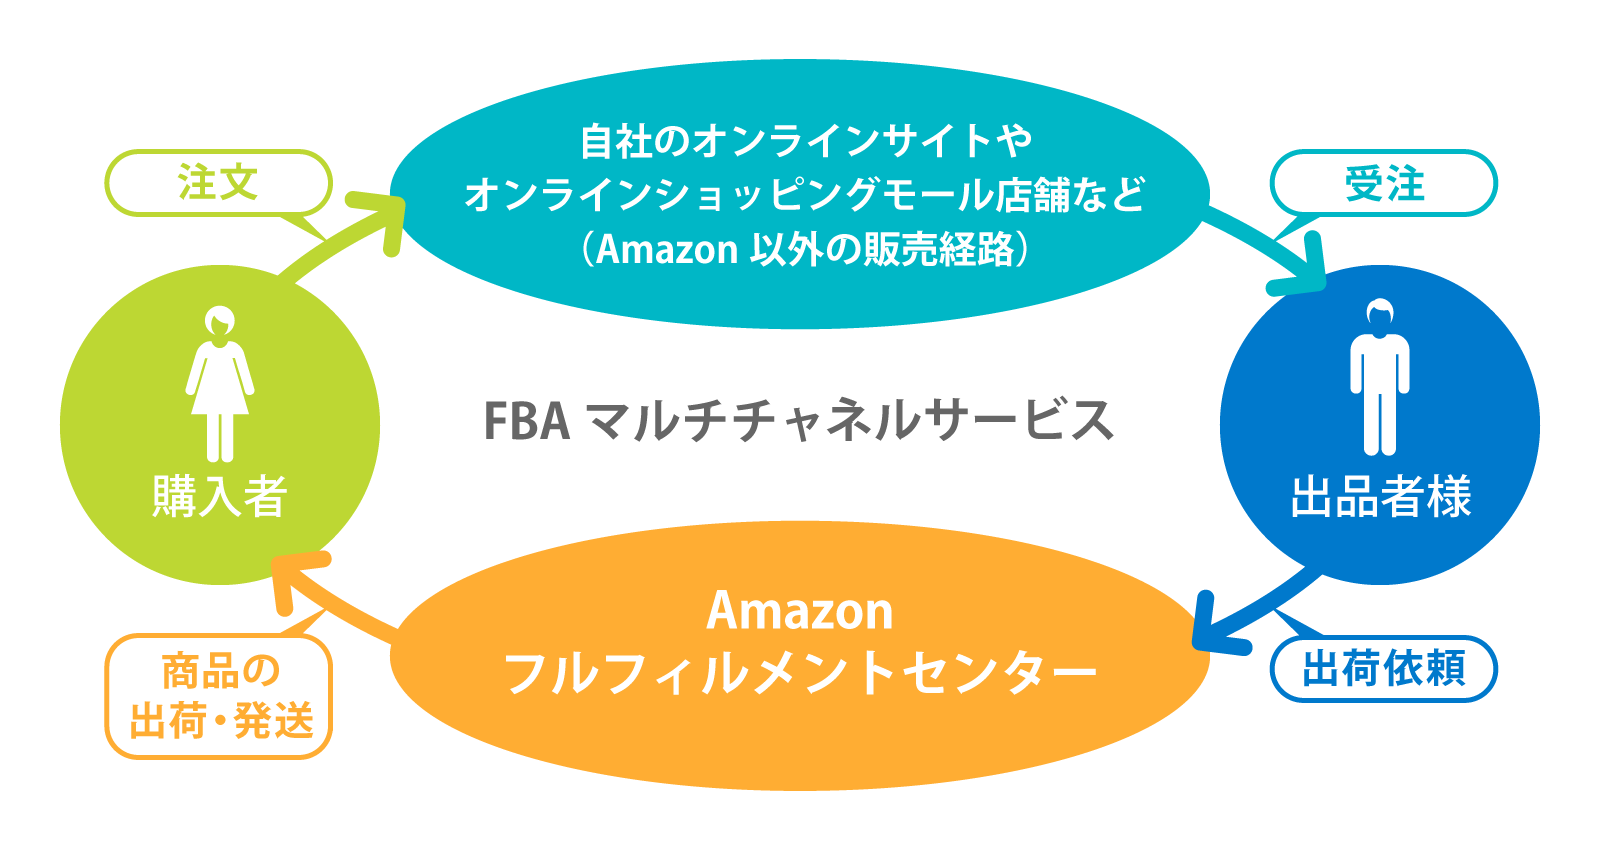 4月フルフィルメントby Amazonの提供を開始。